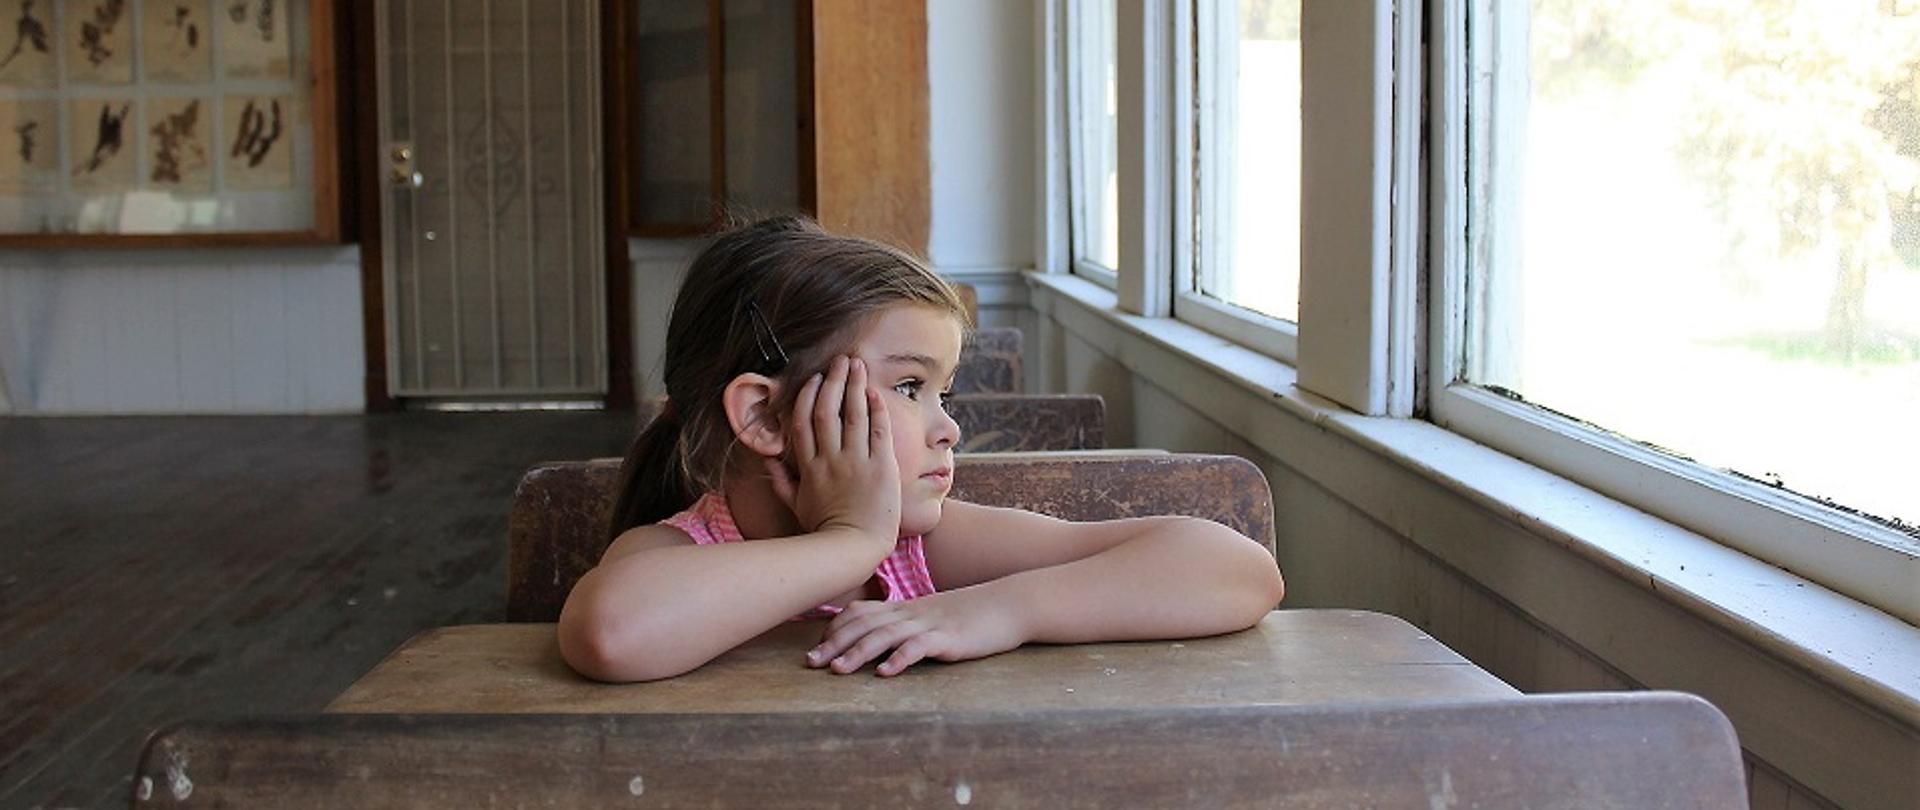 dziewczynka siedząca sama w ławce szkolnej w pustej klasie, podpierająca głowę ręką, patrząca przez zamknięte okna